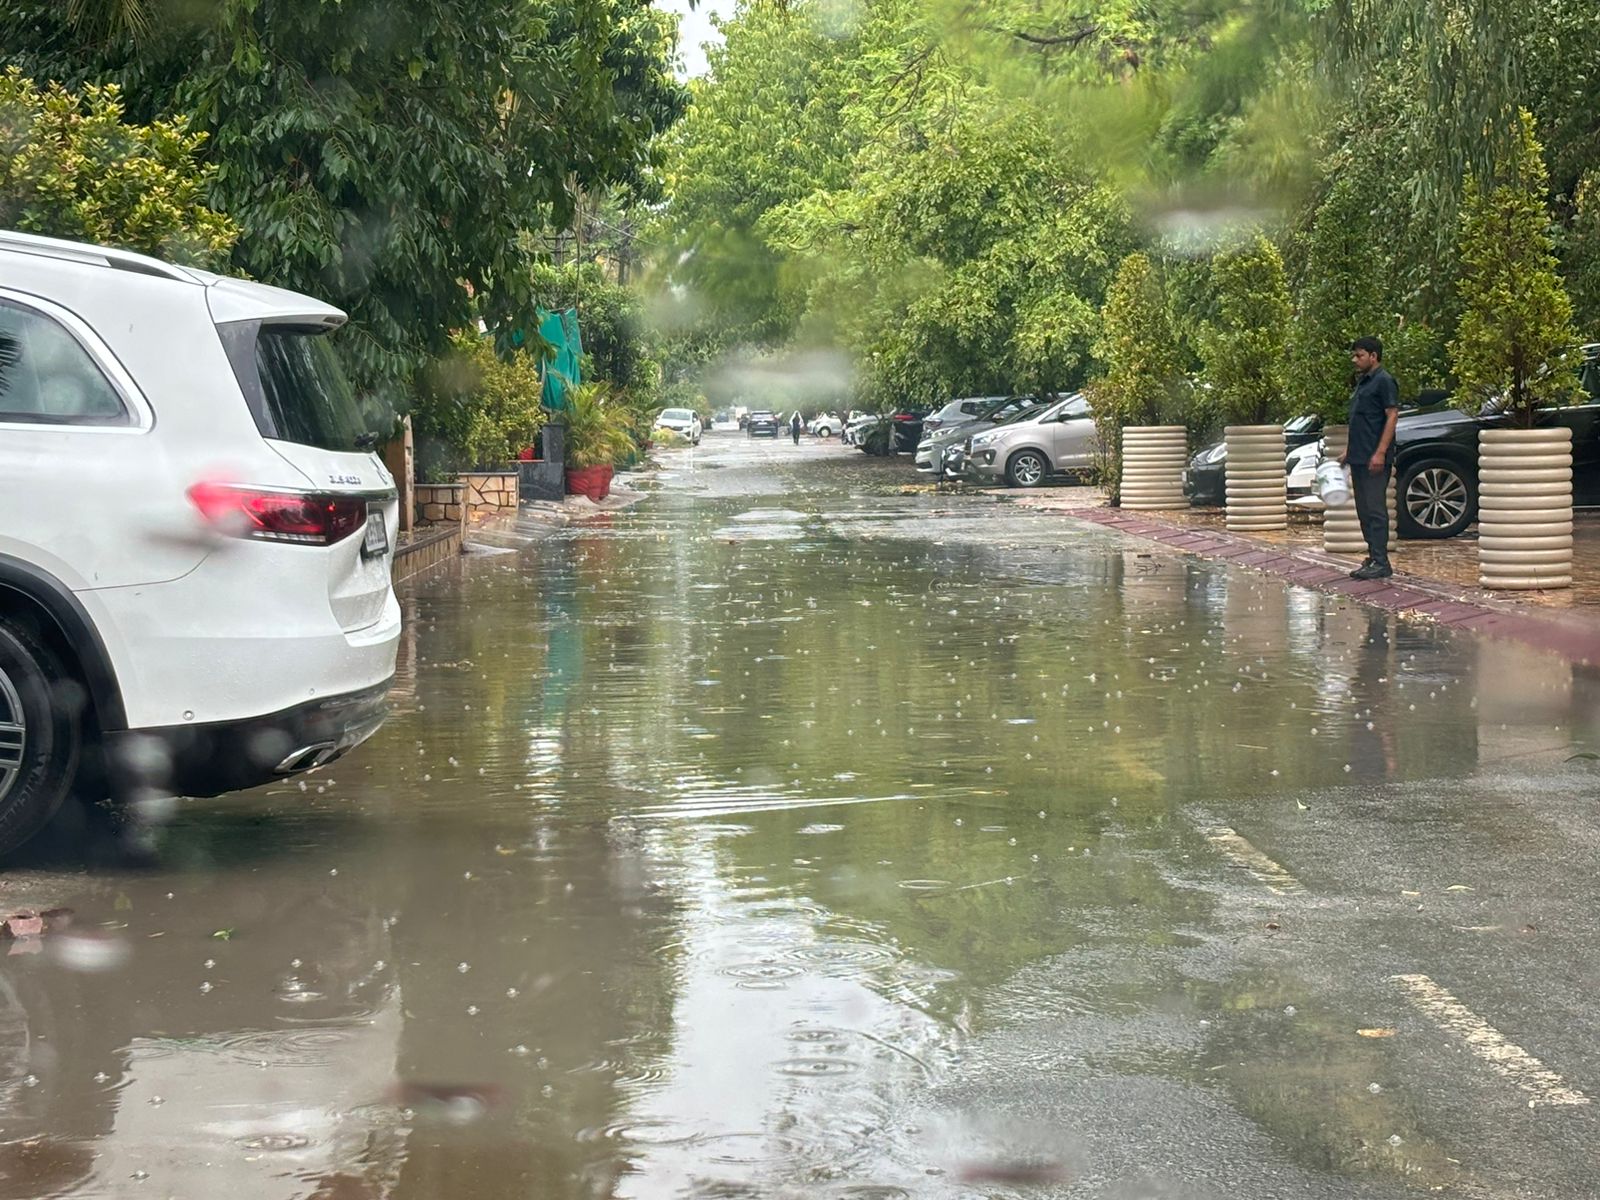 UP Rain Alert : नोएडा-गाजियाबाद समेत यूपी के कई जिलों में बारिश शुरू, 23 जून से झमाझम बारिश का अलर्ट